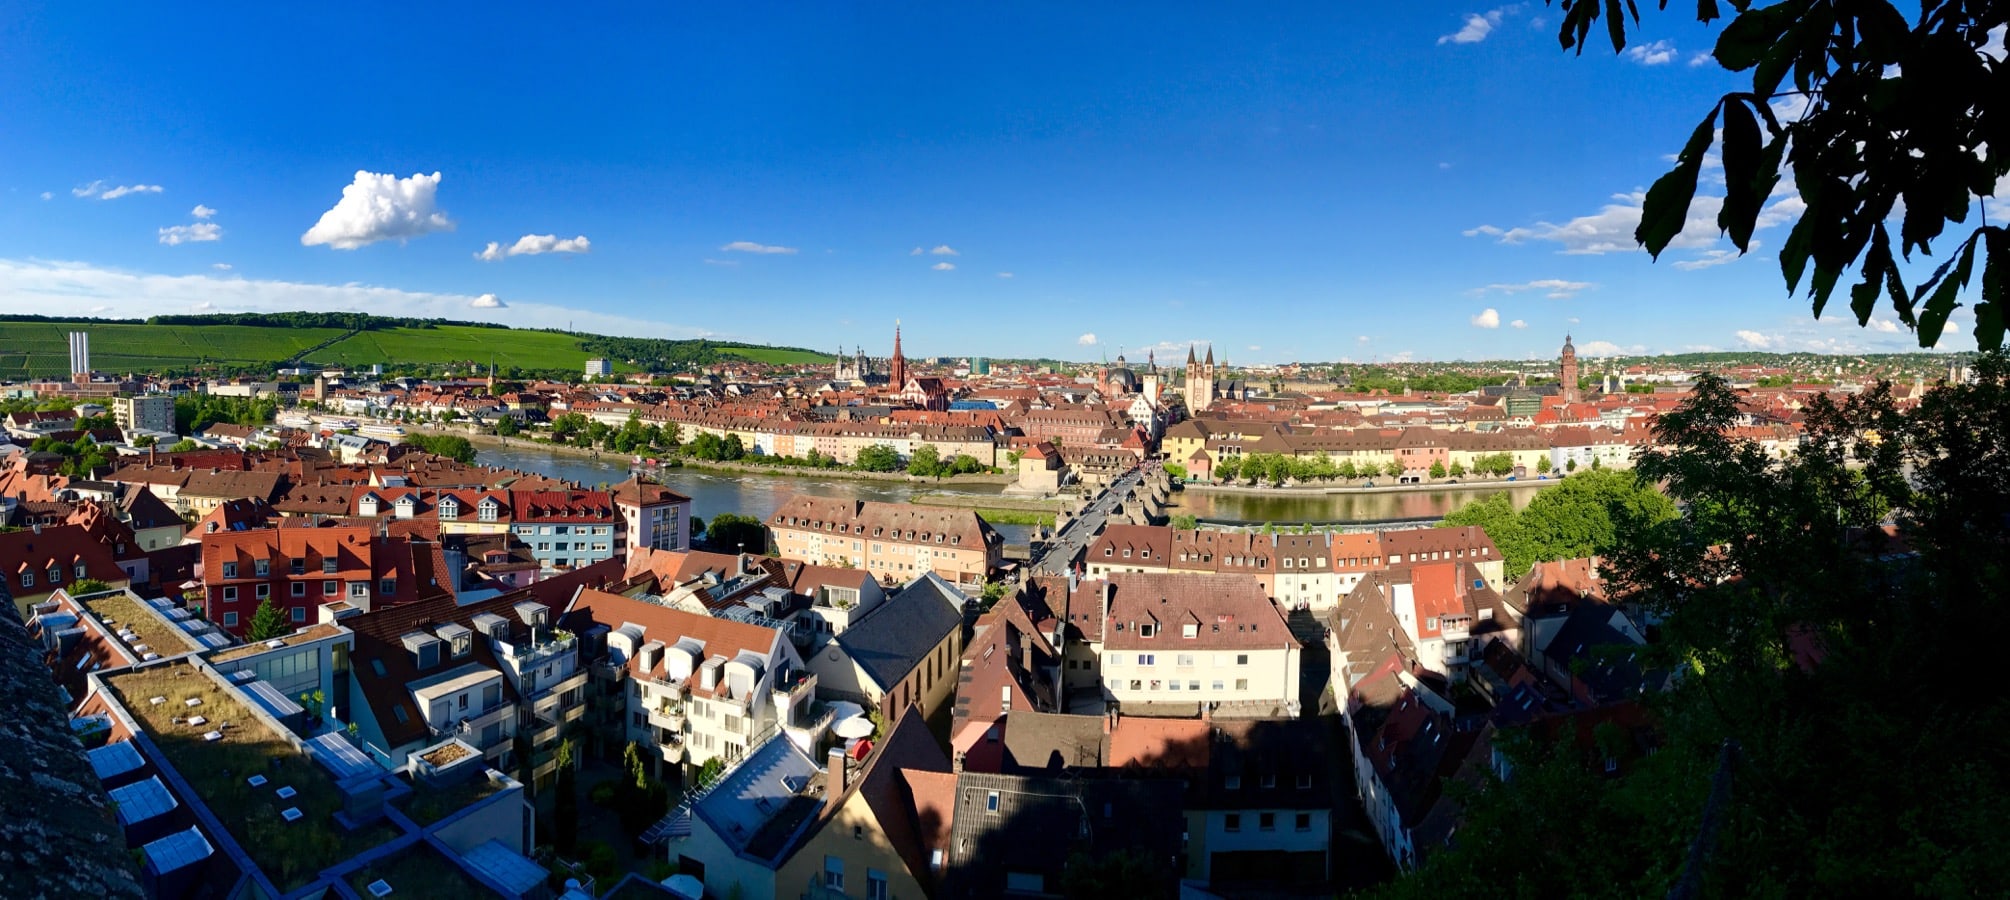 Blick auf Würzburg von der Festung Marienberg aus